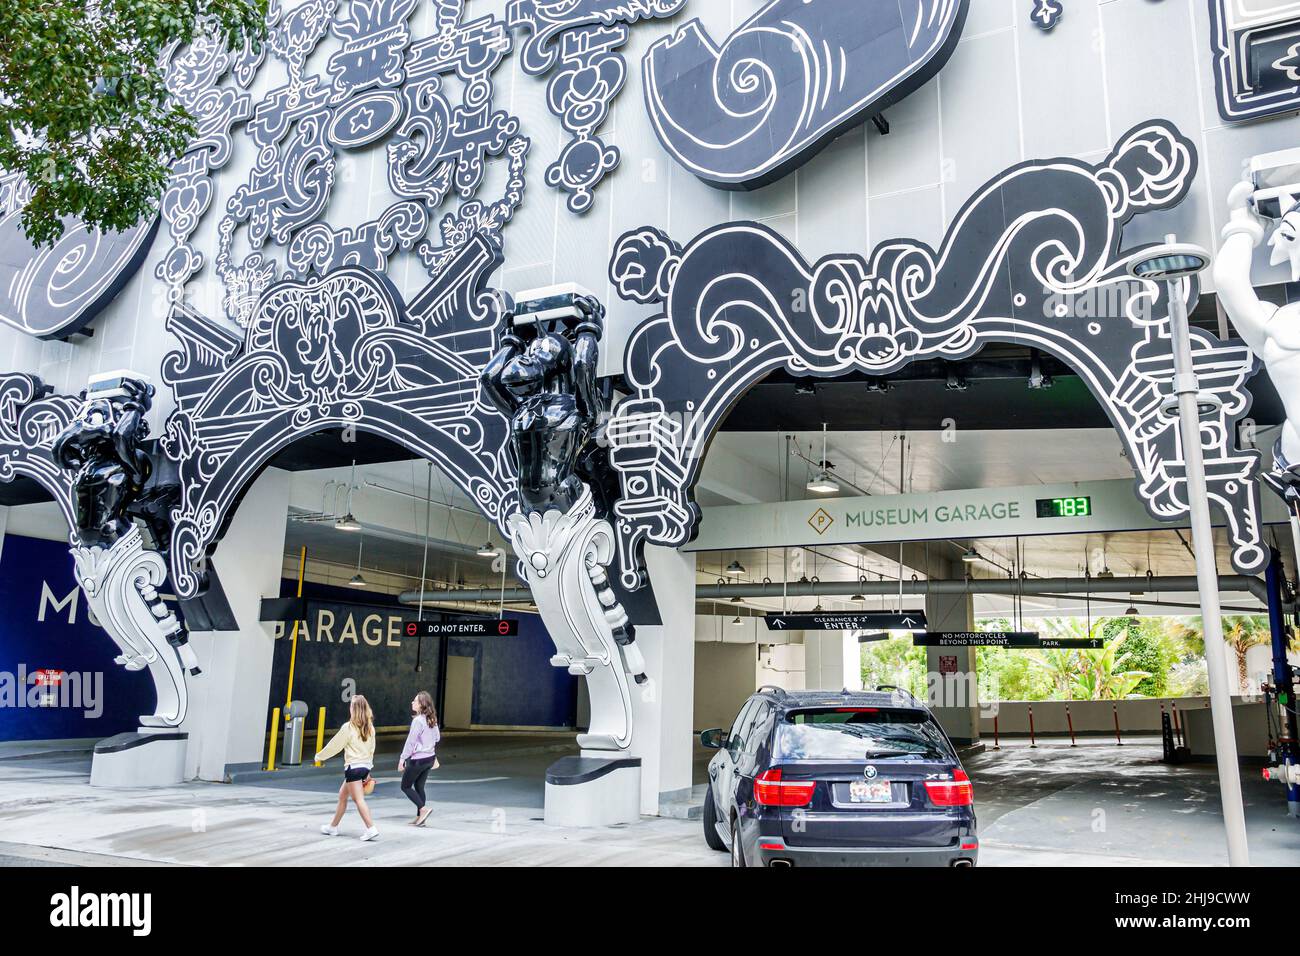 Miami Design District Parking Garage · RSM Design